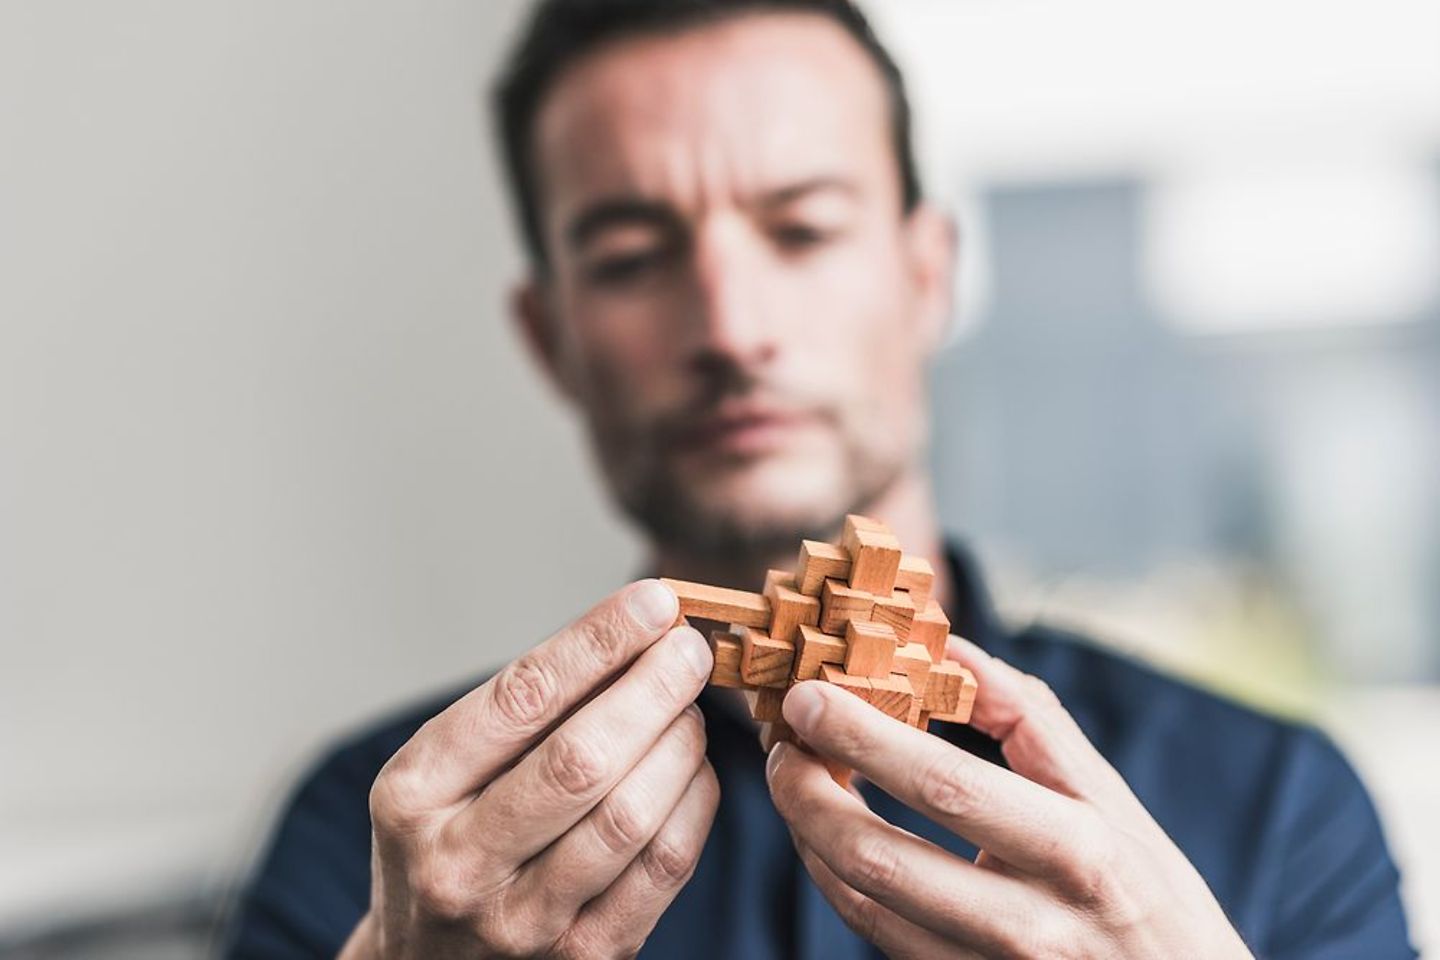  Een man zet een houten kubus in elkaar - lastig om AI aan de wettelijke eisen te laten voldoen